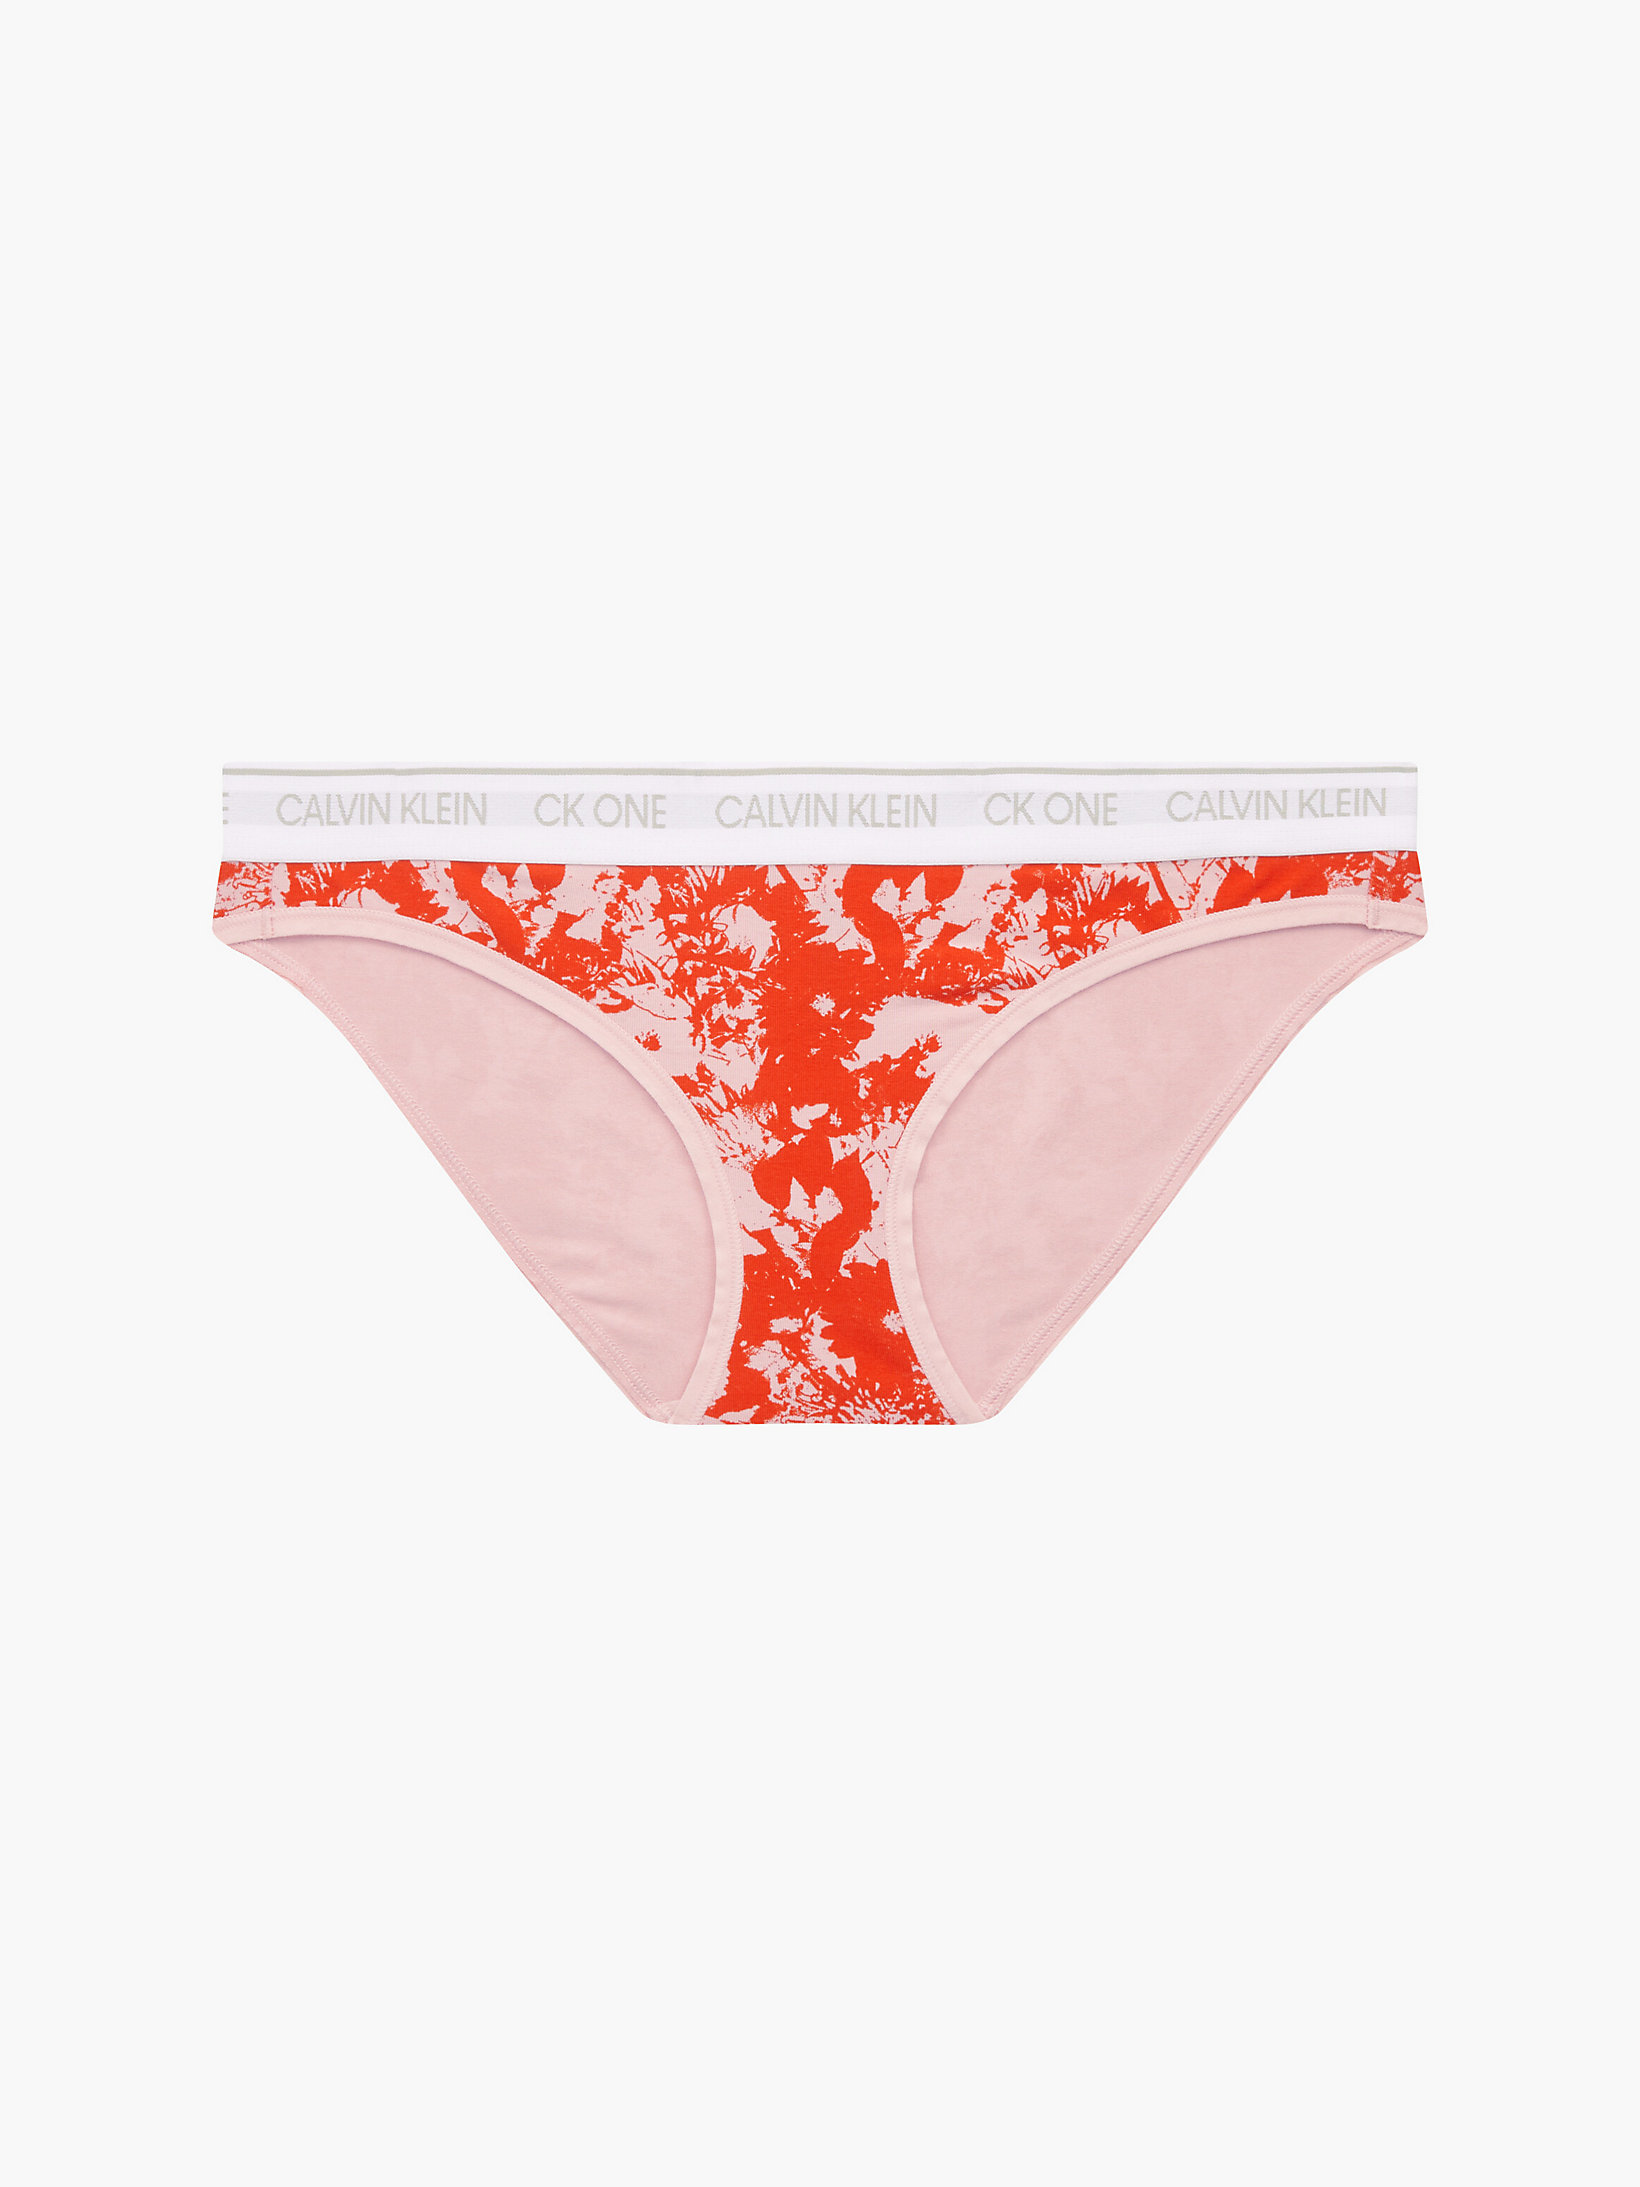 Solar Floral Print_pink Shell Bikini Brief - CK One undefined women Calvin Klein